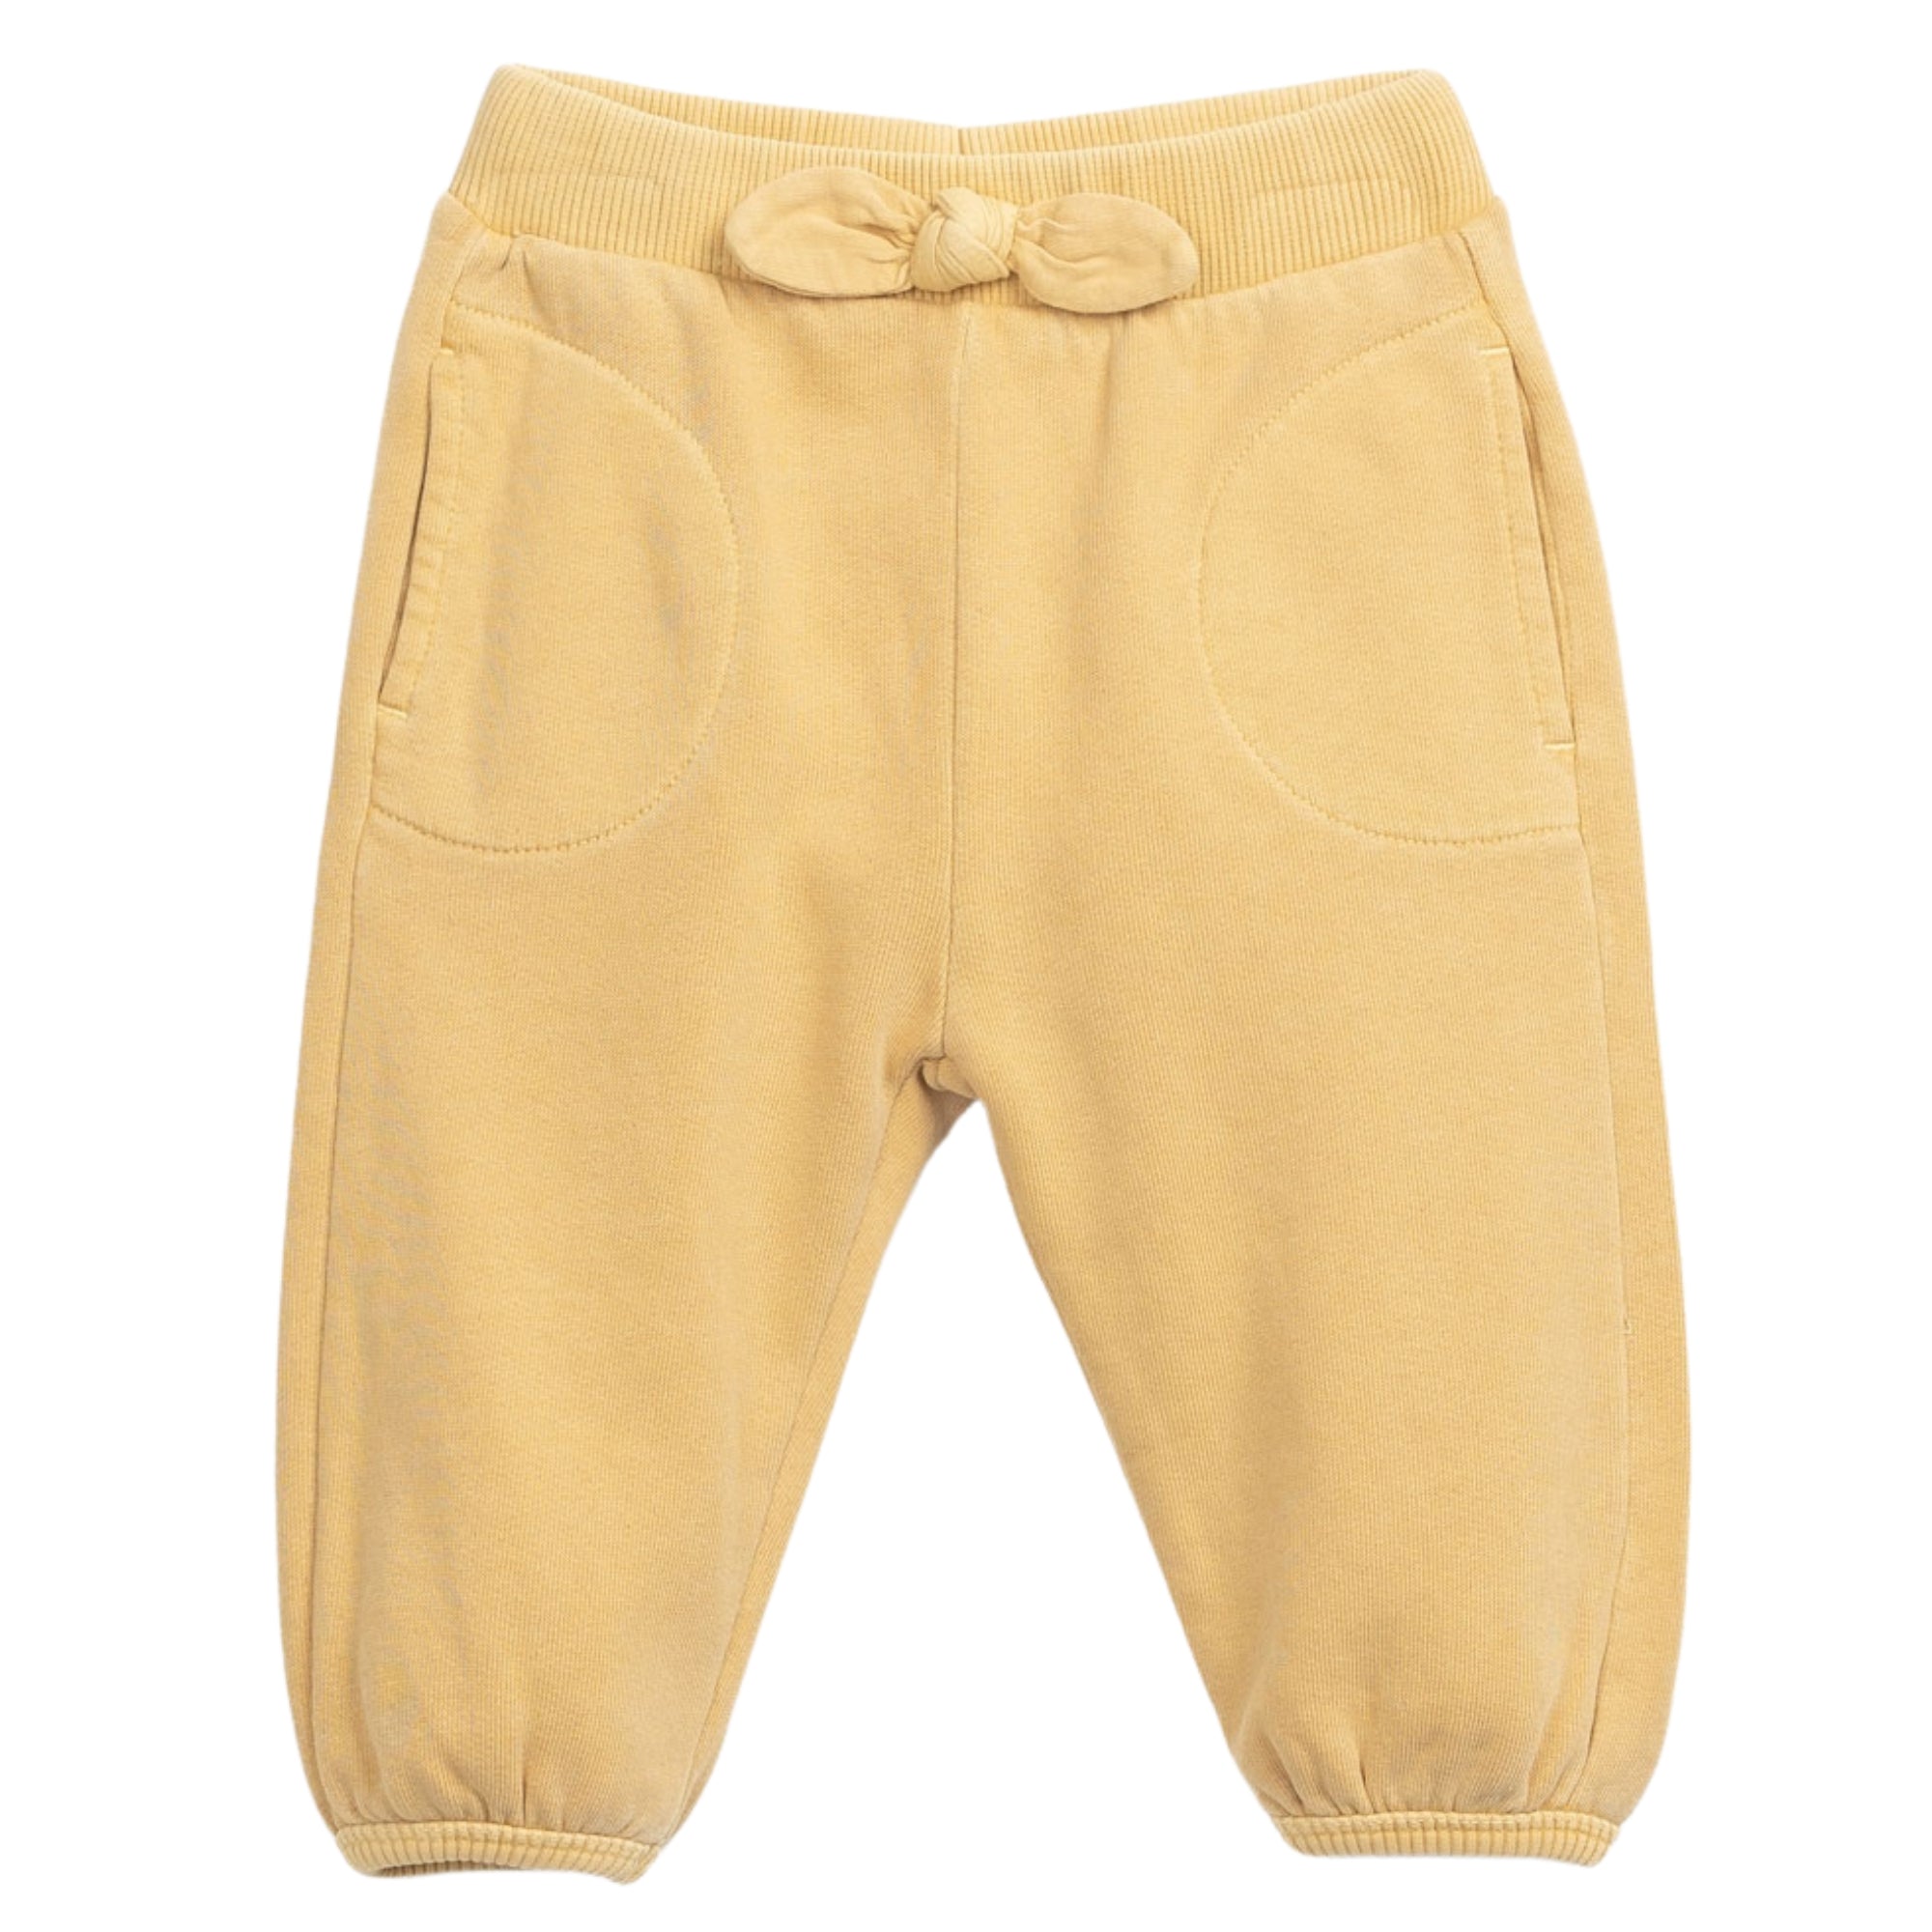 pantalone-felpa-colore-giallo-dettaglio-fiocco-e-tasche-utilizzabili